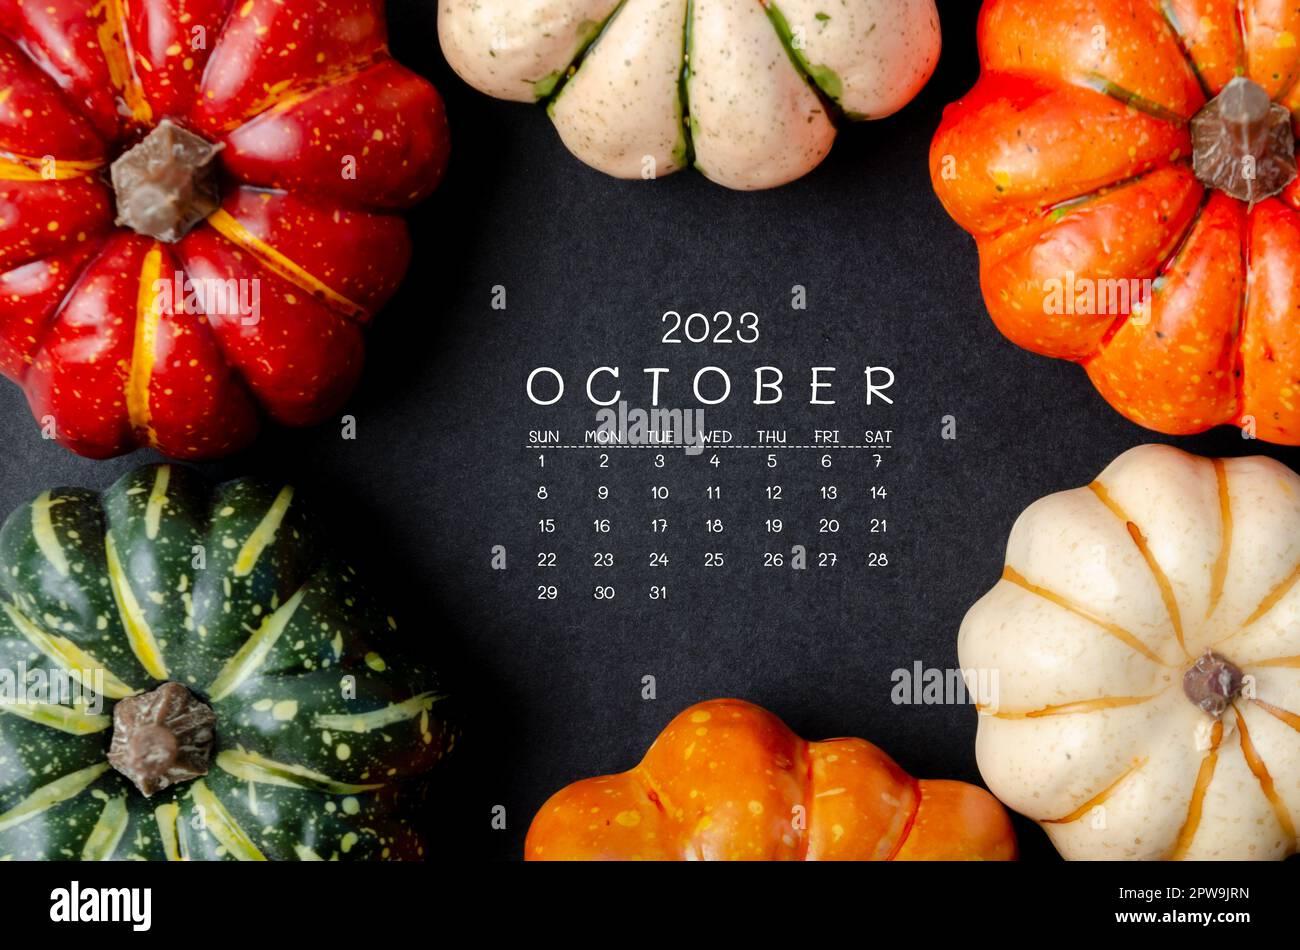 October 2023 Calendar and pumpkins on black cardboard background